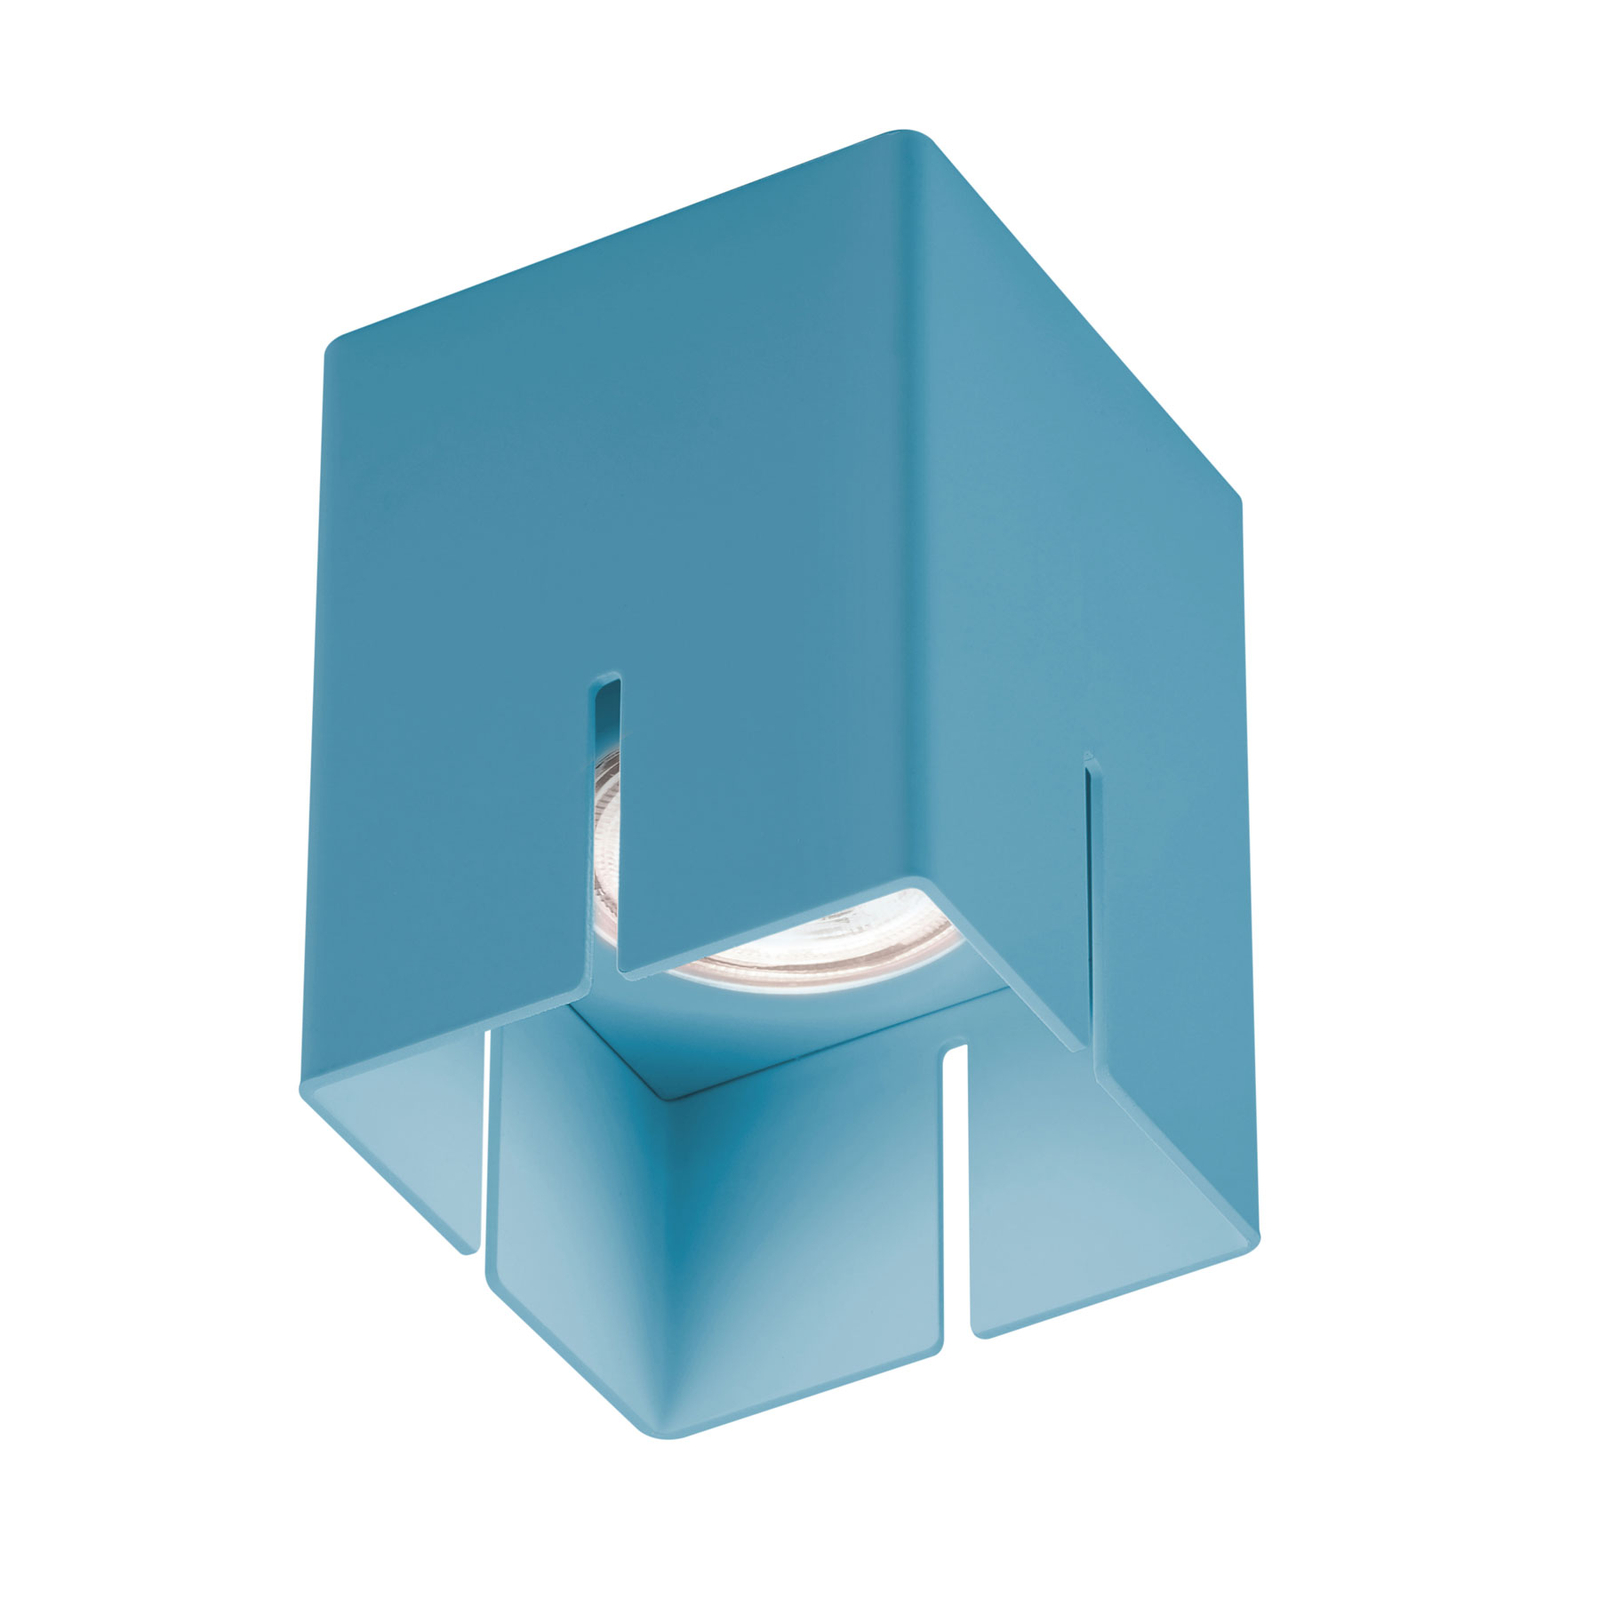 Baulmann 83.200 lubinis šviestuvas, mėlynos spalvos, aukštis 10 cm